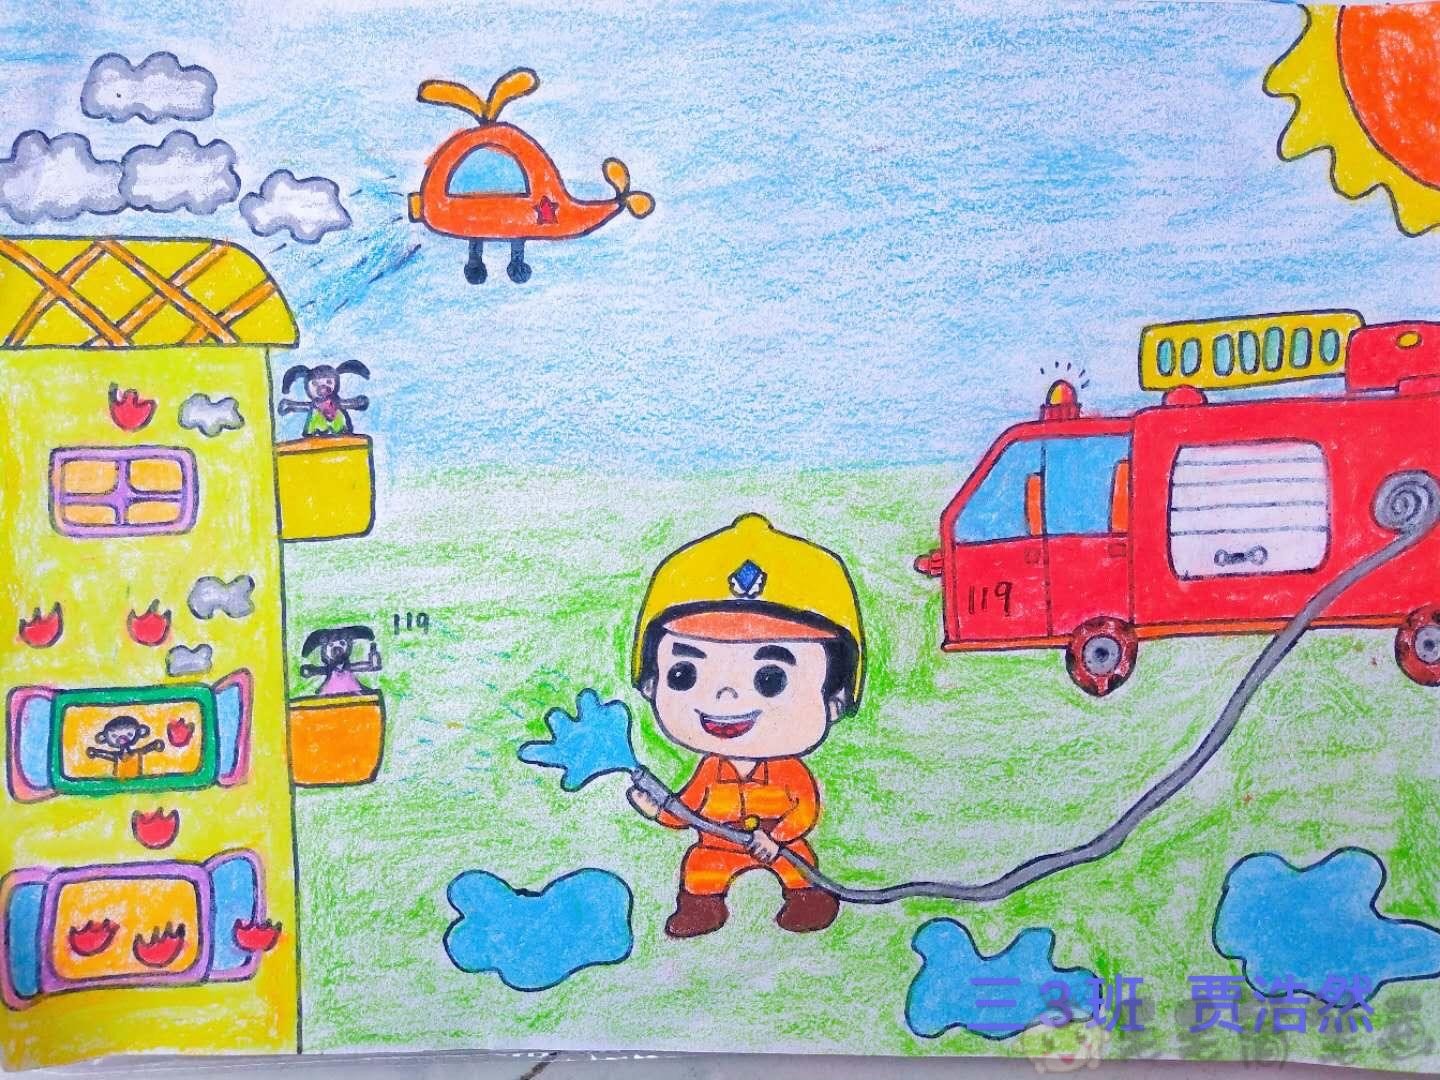 消防儿童画 - 堆糖，美图壁纸兴趣社区